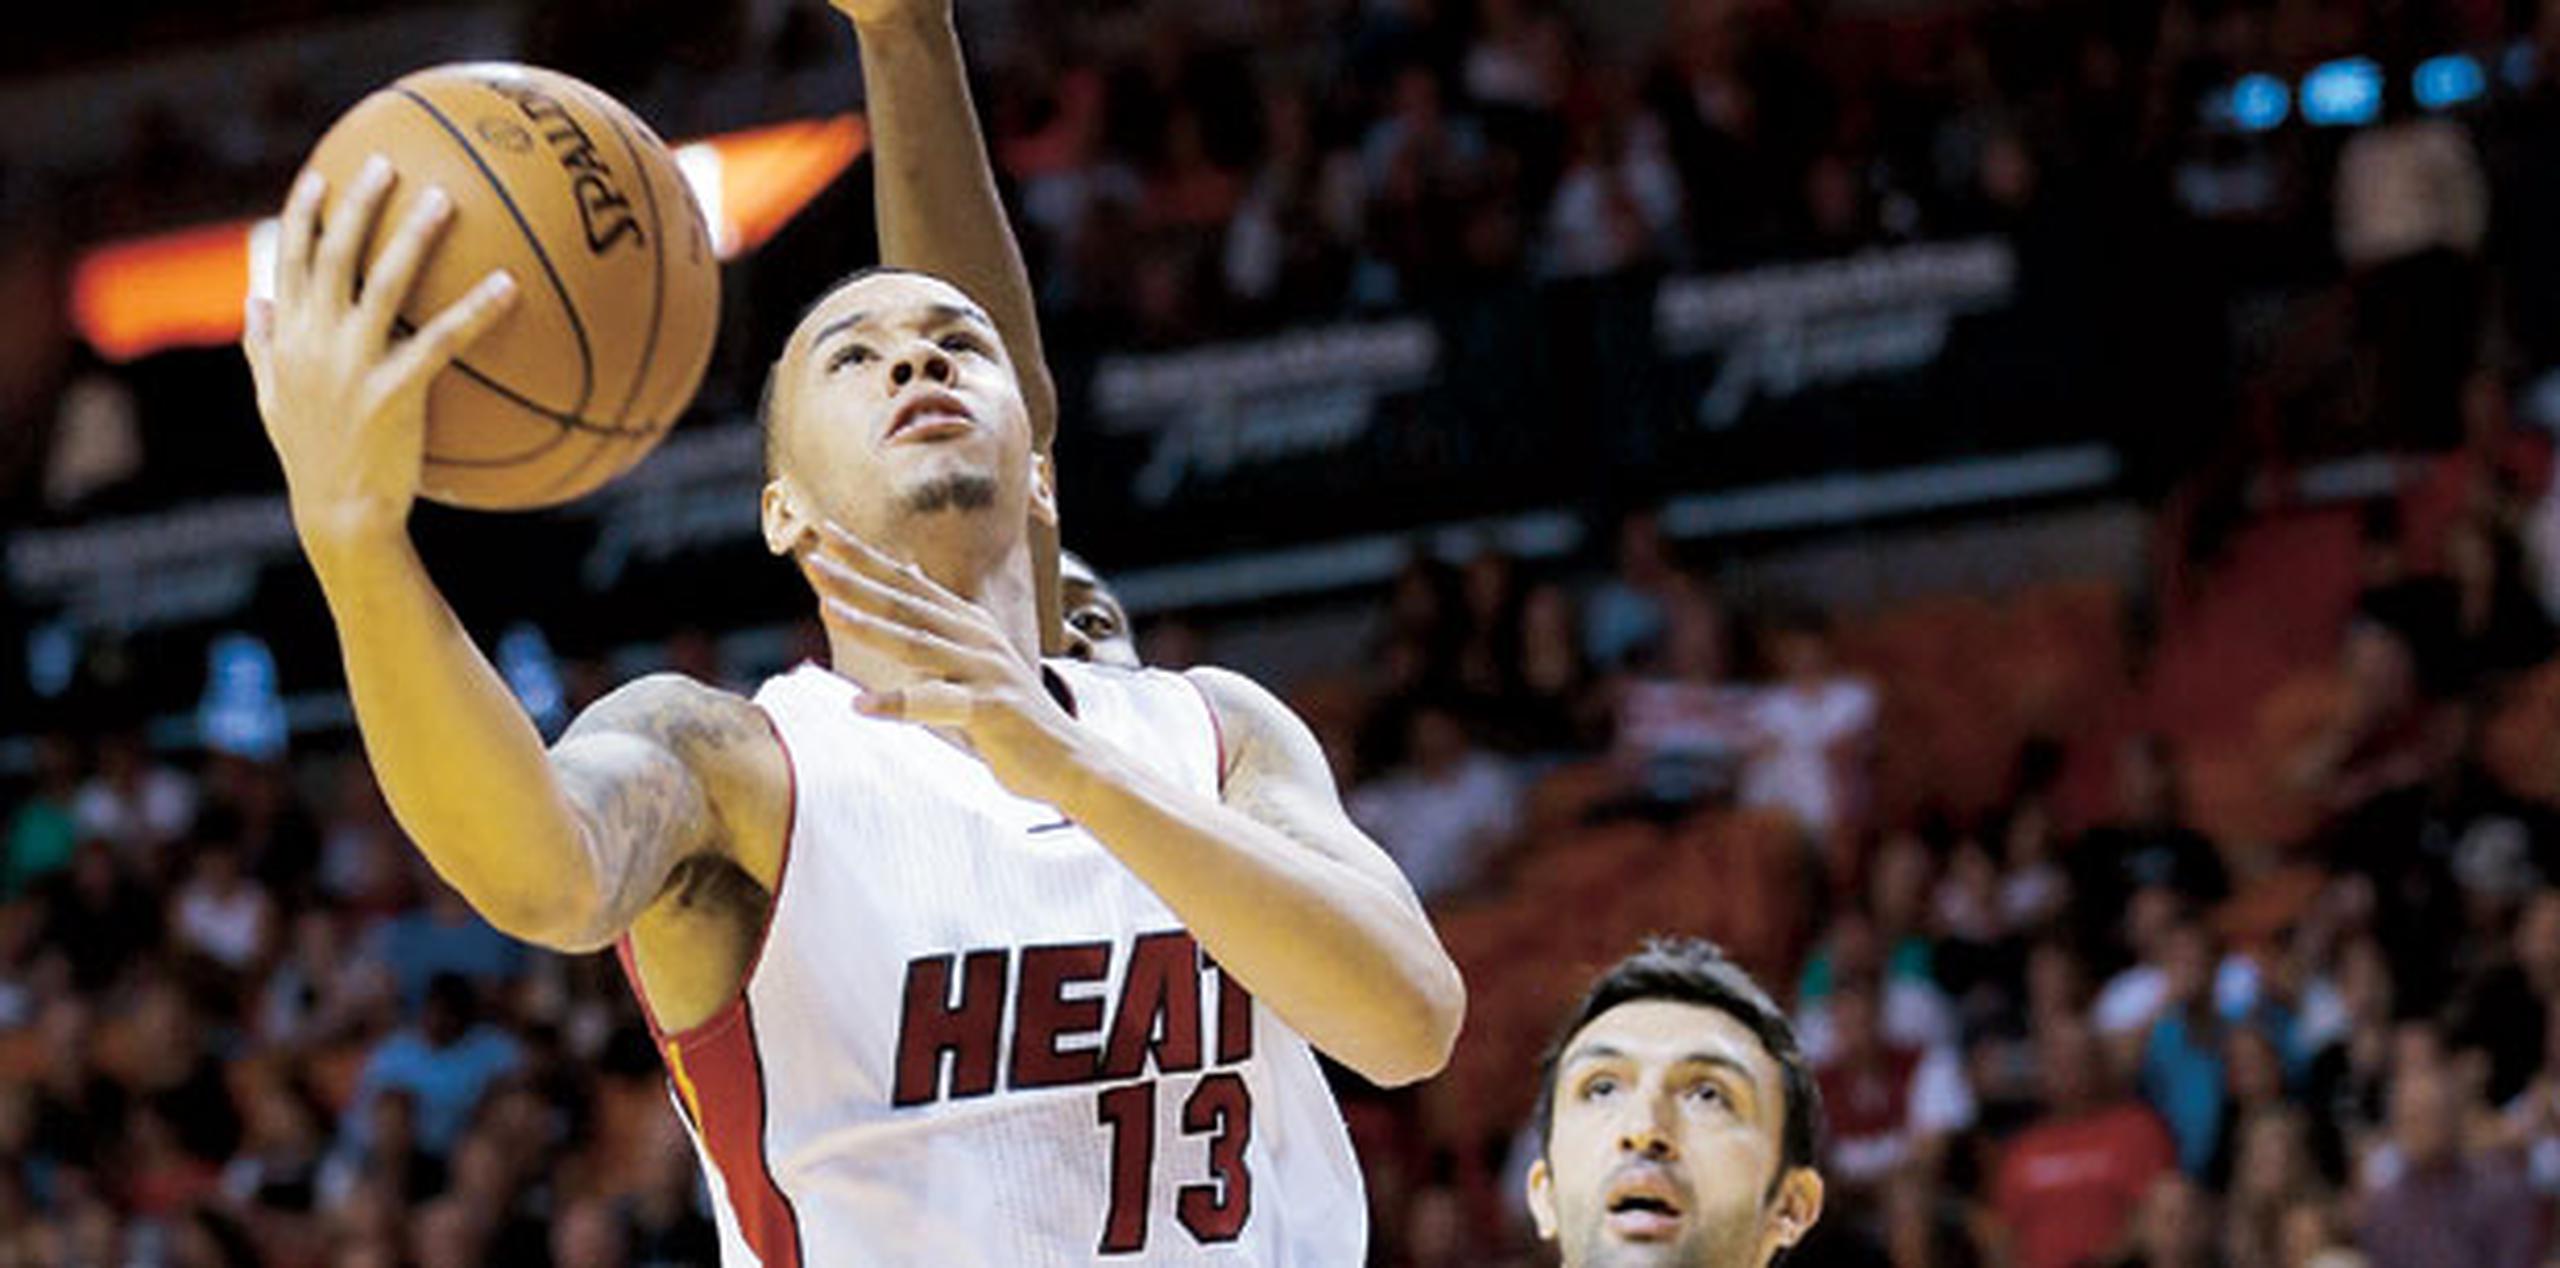 En su única temporada con el Heat, Napier promedió 19.8 minutos, 5.1 puntos, 2.2 rebotes t 2.5 asistencias por partido. (Archivo)